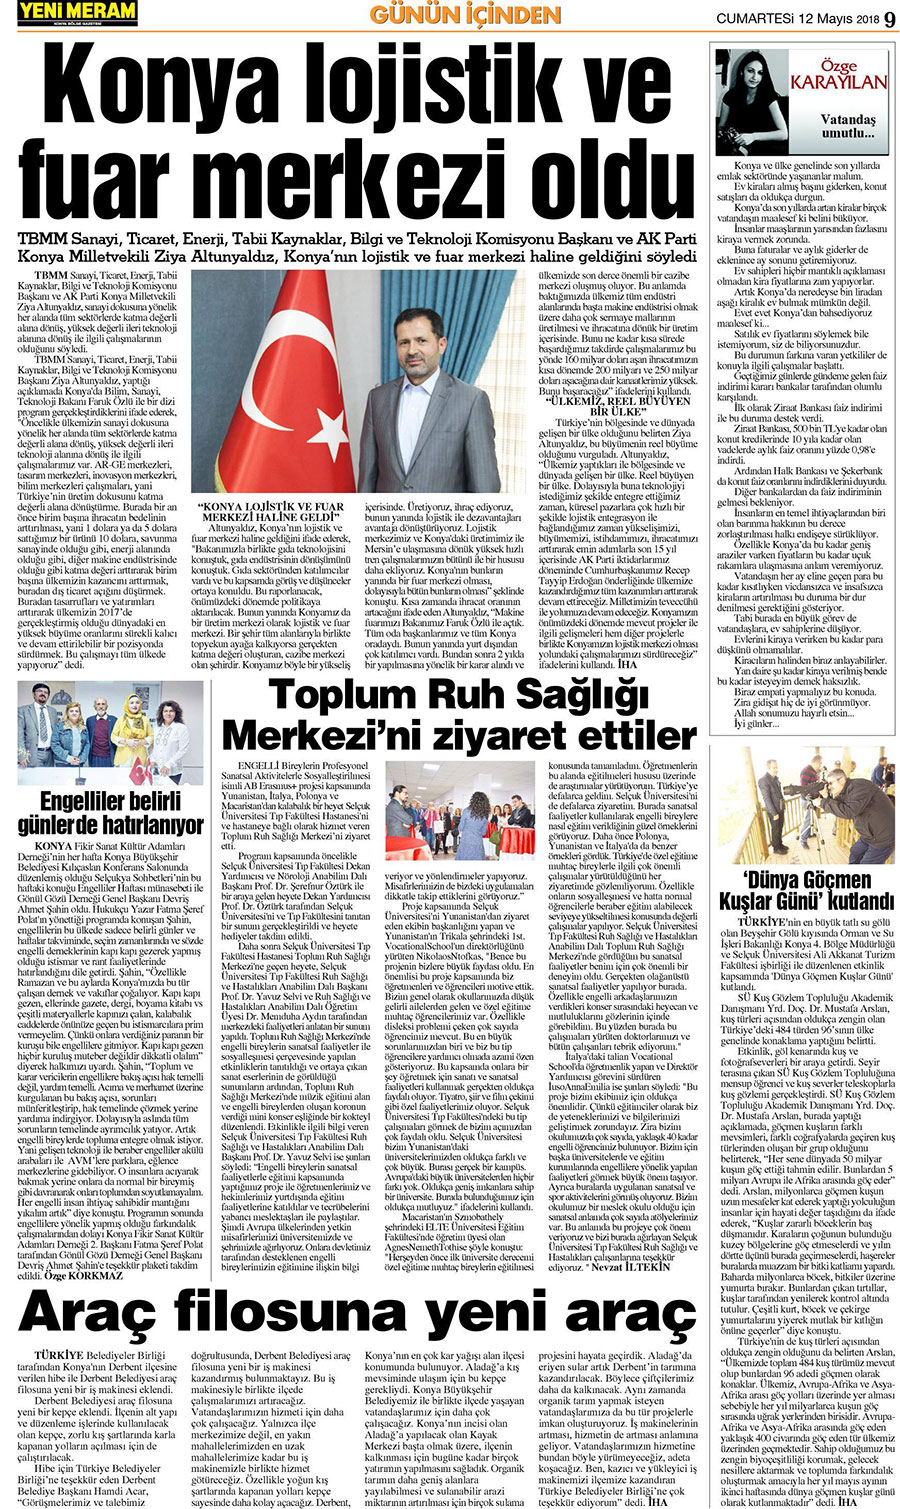 12 Mayıs 2018 Yeni Meram Gazetesi